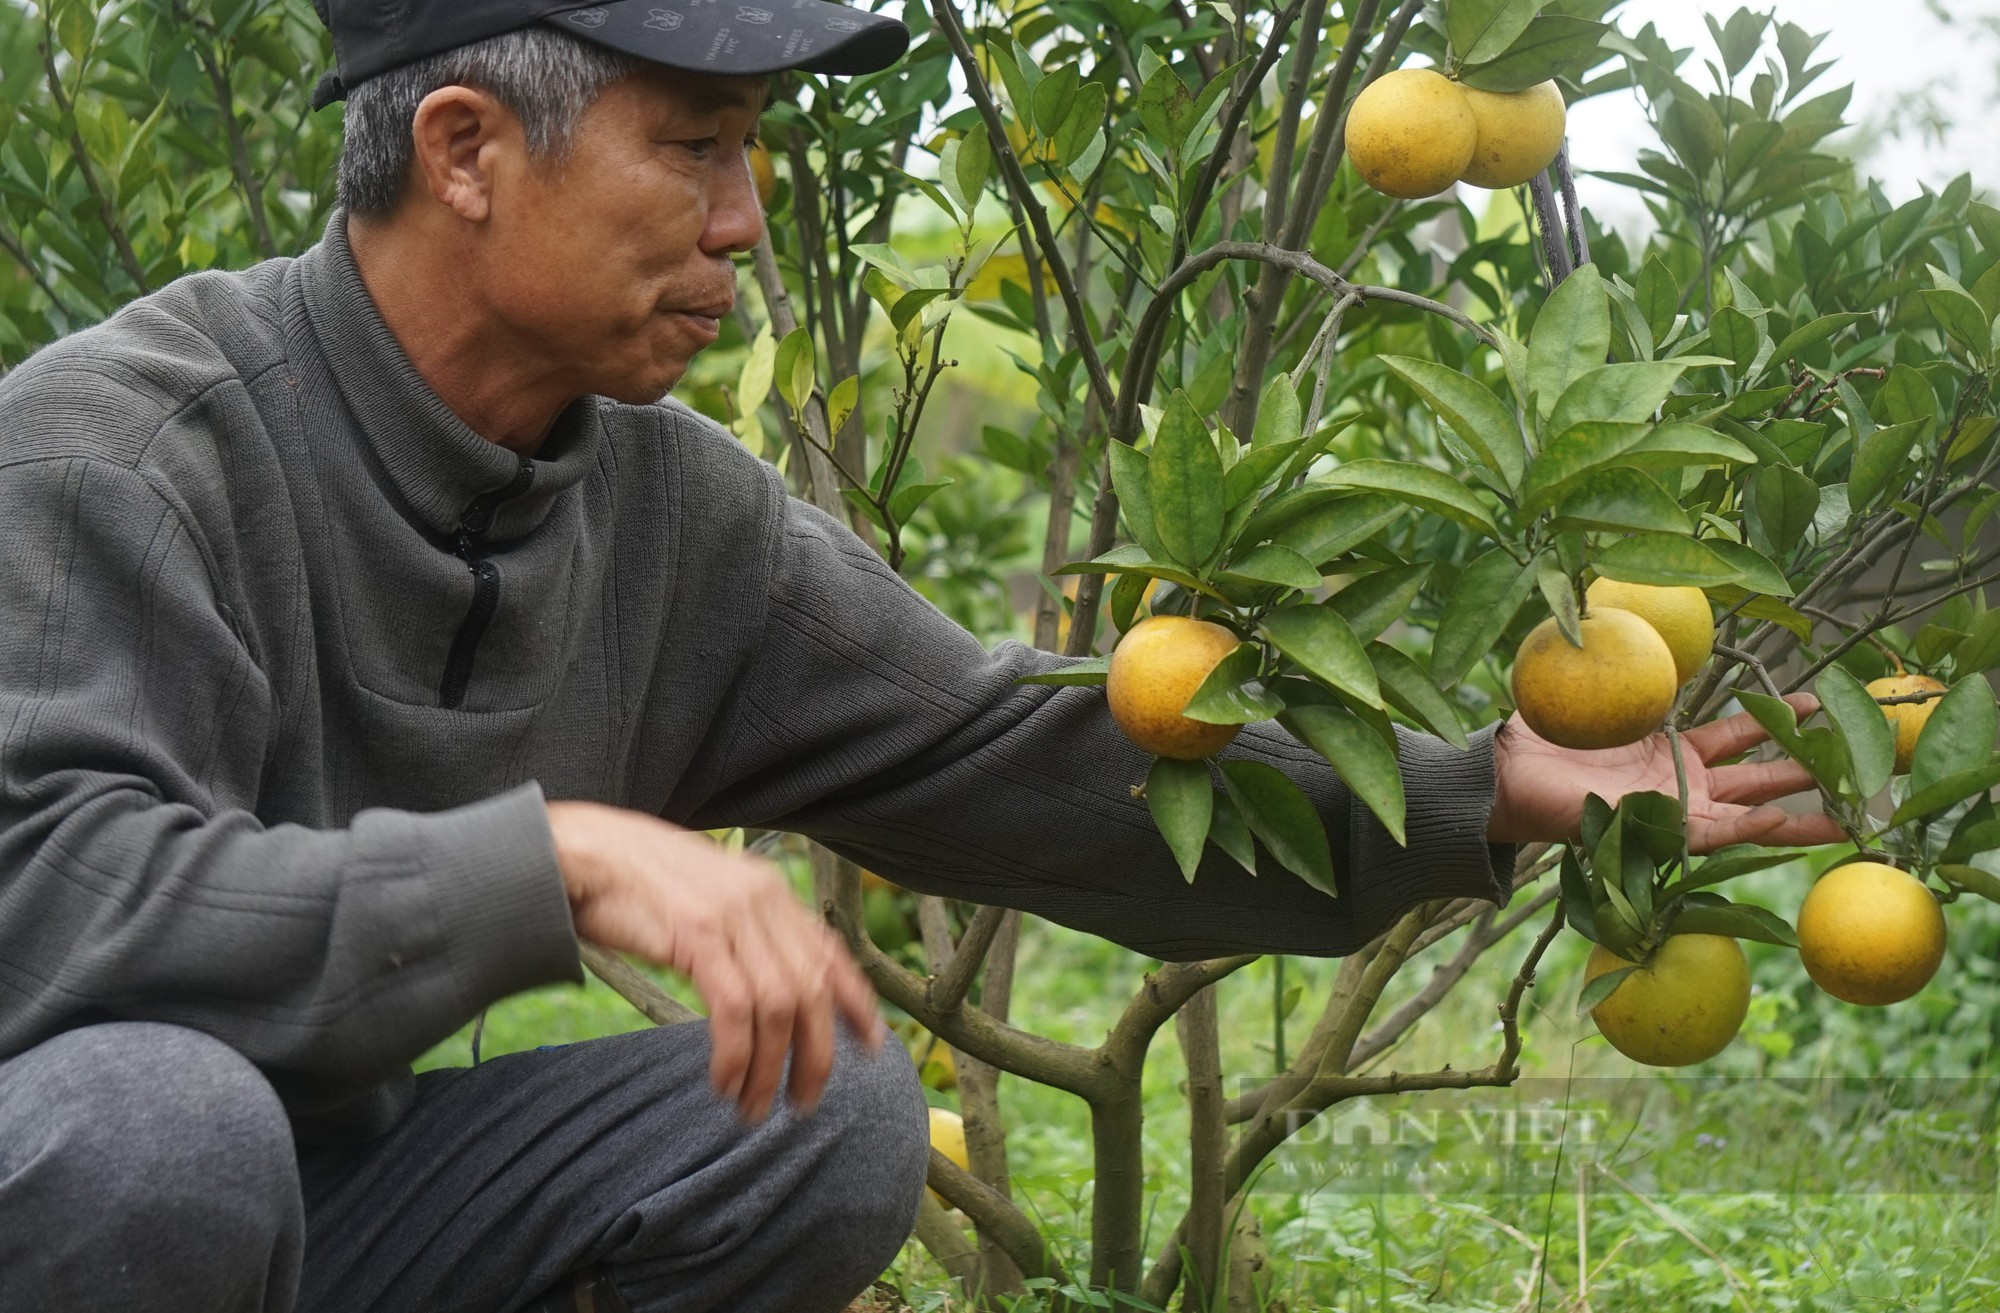 Loại cam đặc sản nức tiếng ở Nghệ An mỗi quả giá 80.000 đồng đang treo trên cây khách đã đến đặt mua - Ảnh 5.